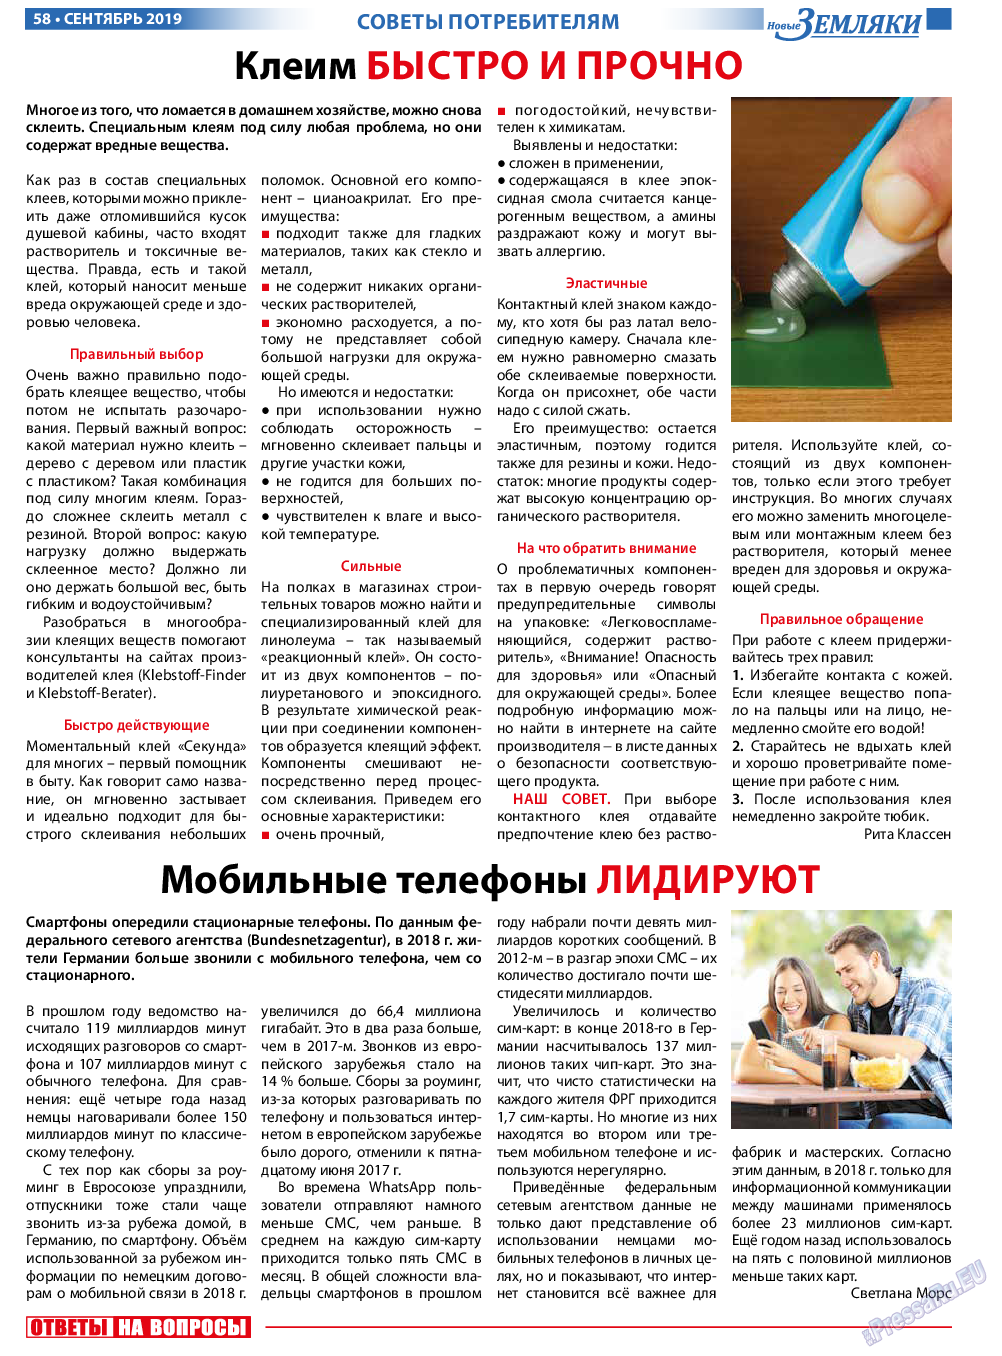 Новые Земляки, газета. 2019 №9 стр.58